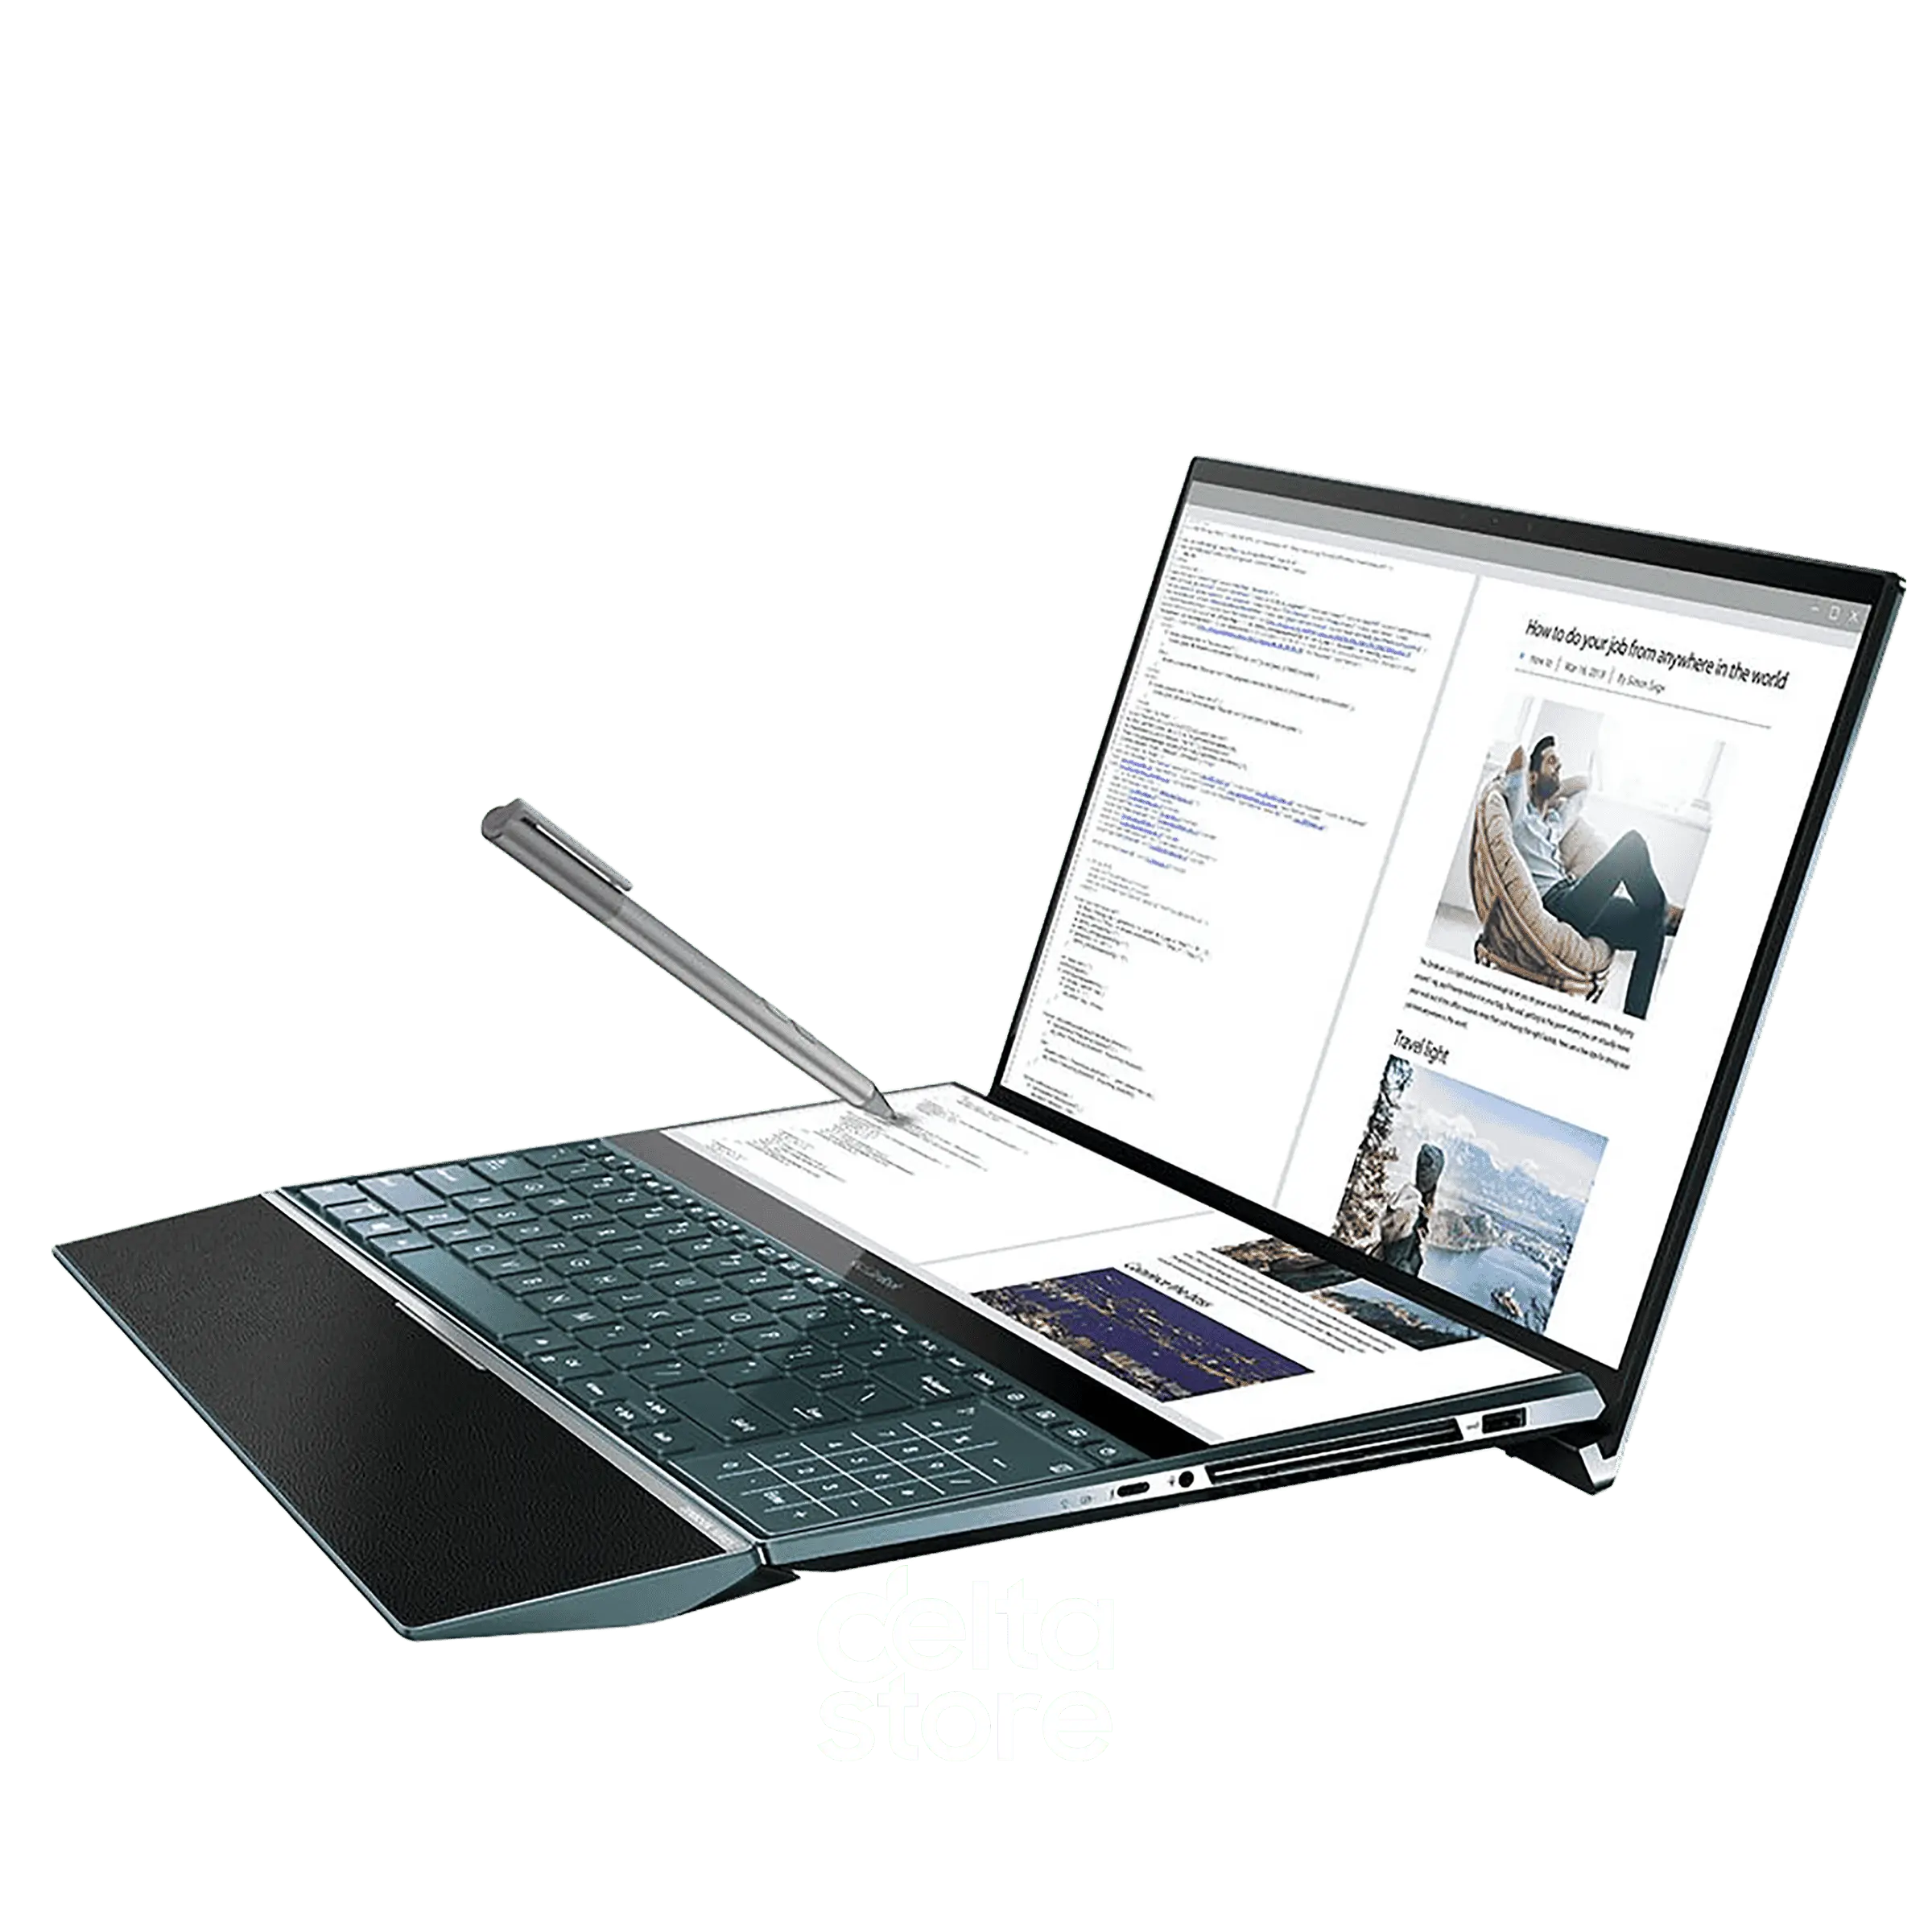 Asus ZenBook Duo 14 UX482EAR-DB71T 90NB0S41-M05320